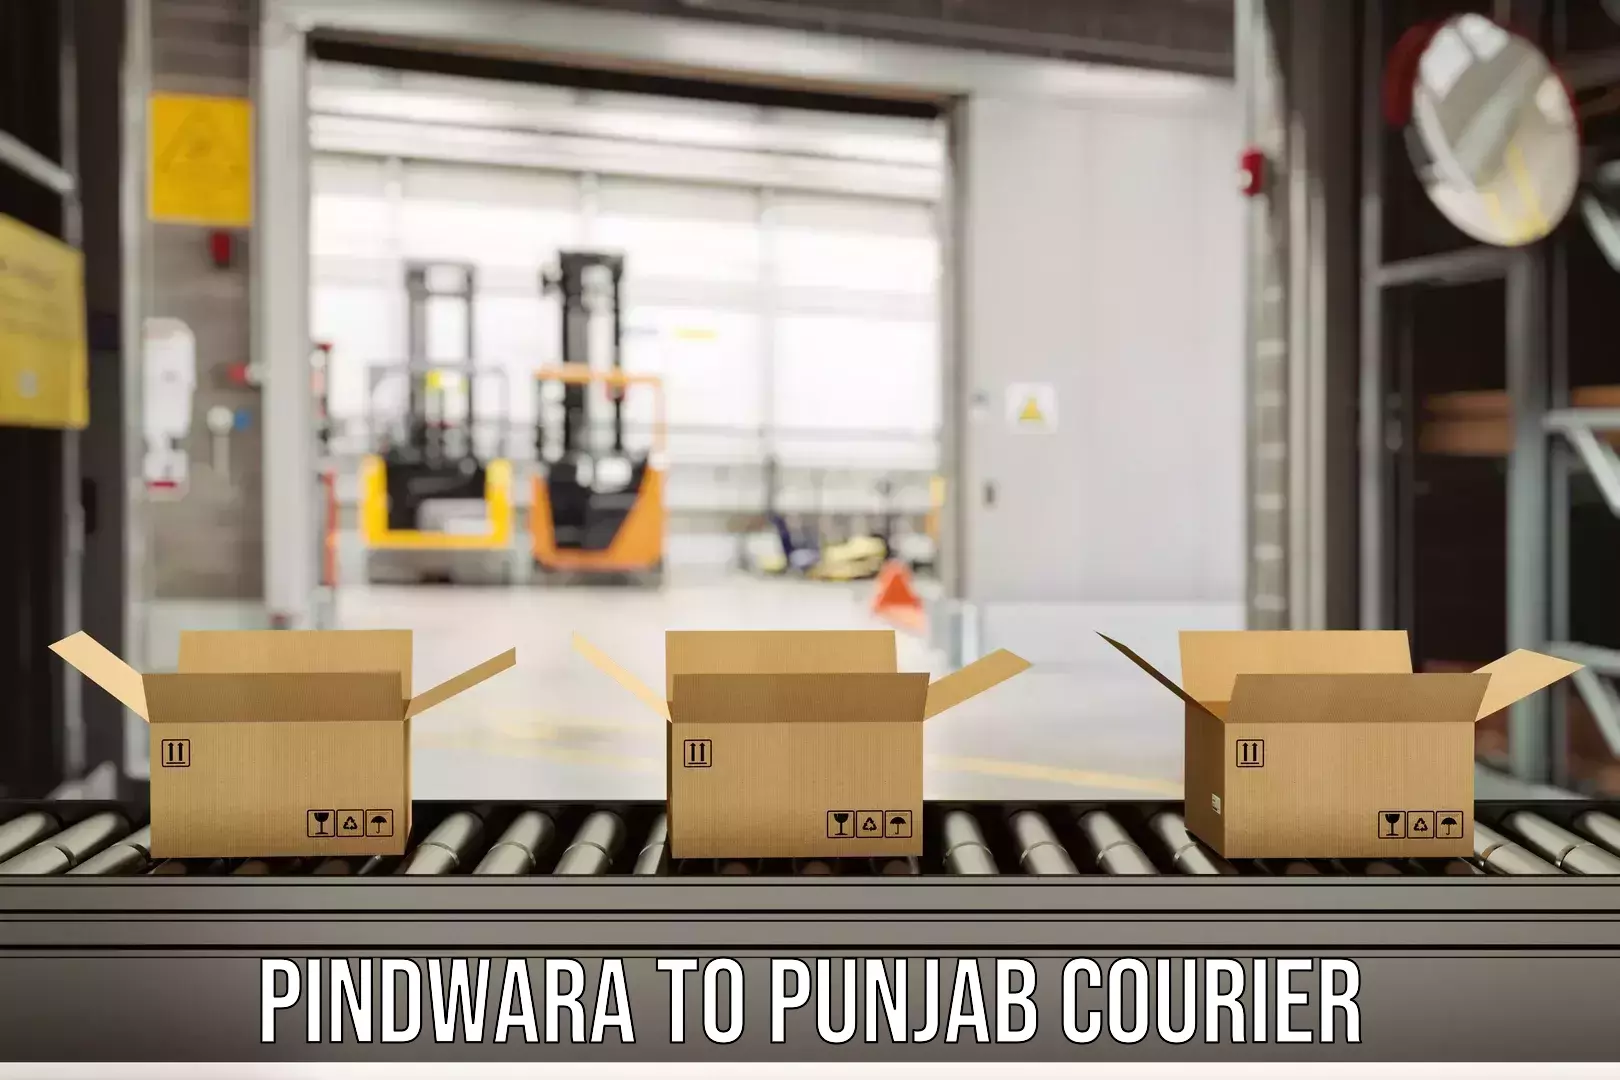 Express package handling Pindwara to Central University of Punjab Bathinda